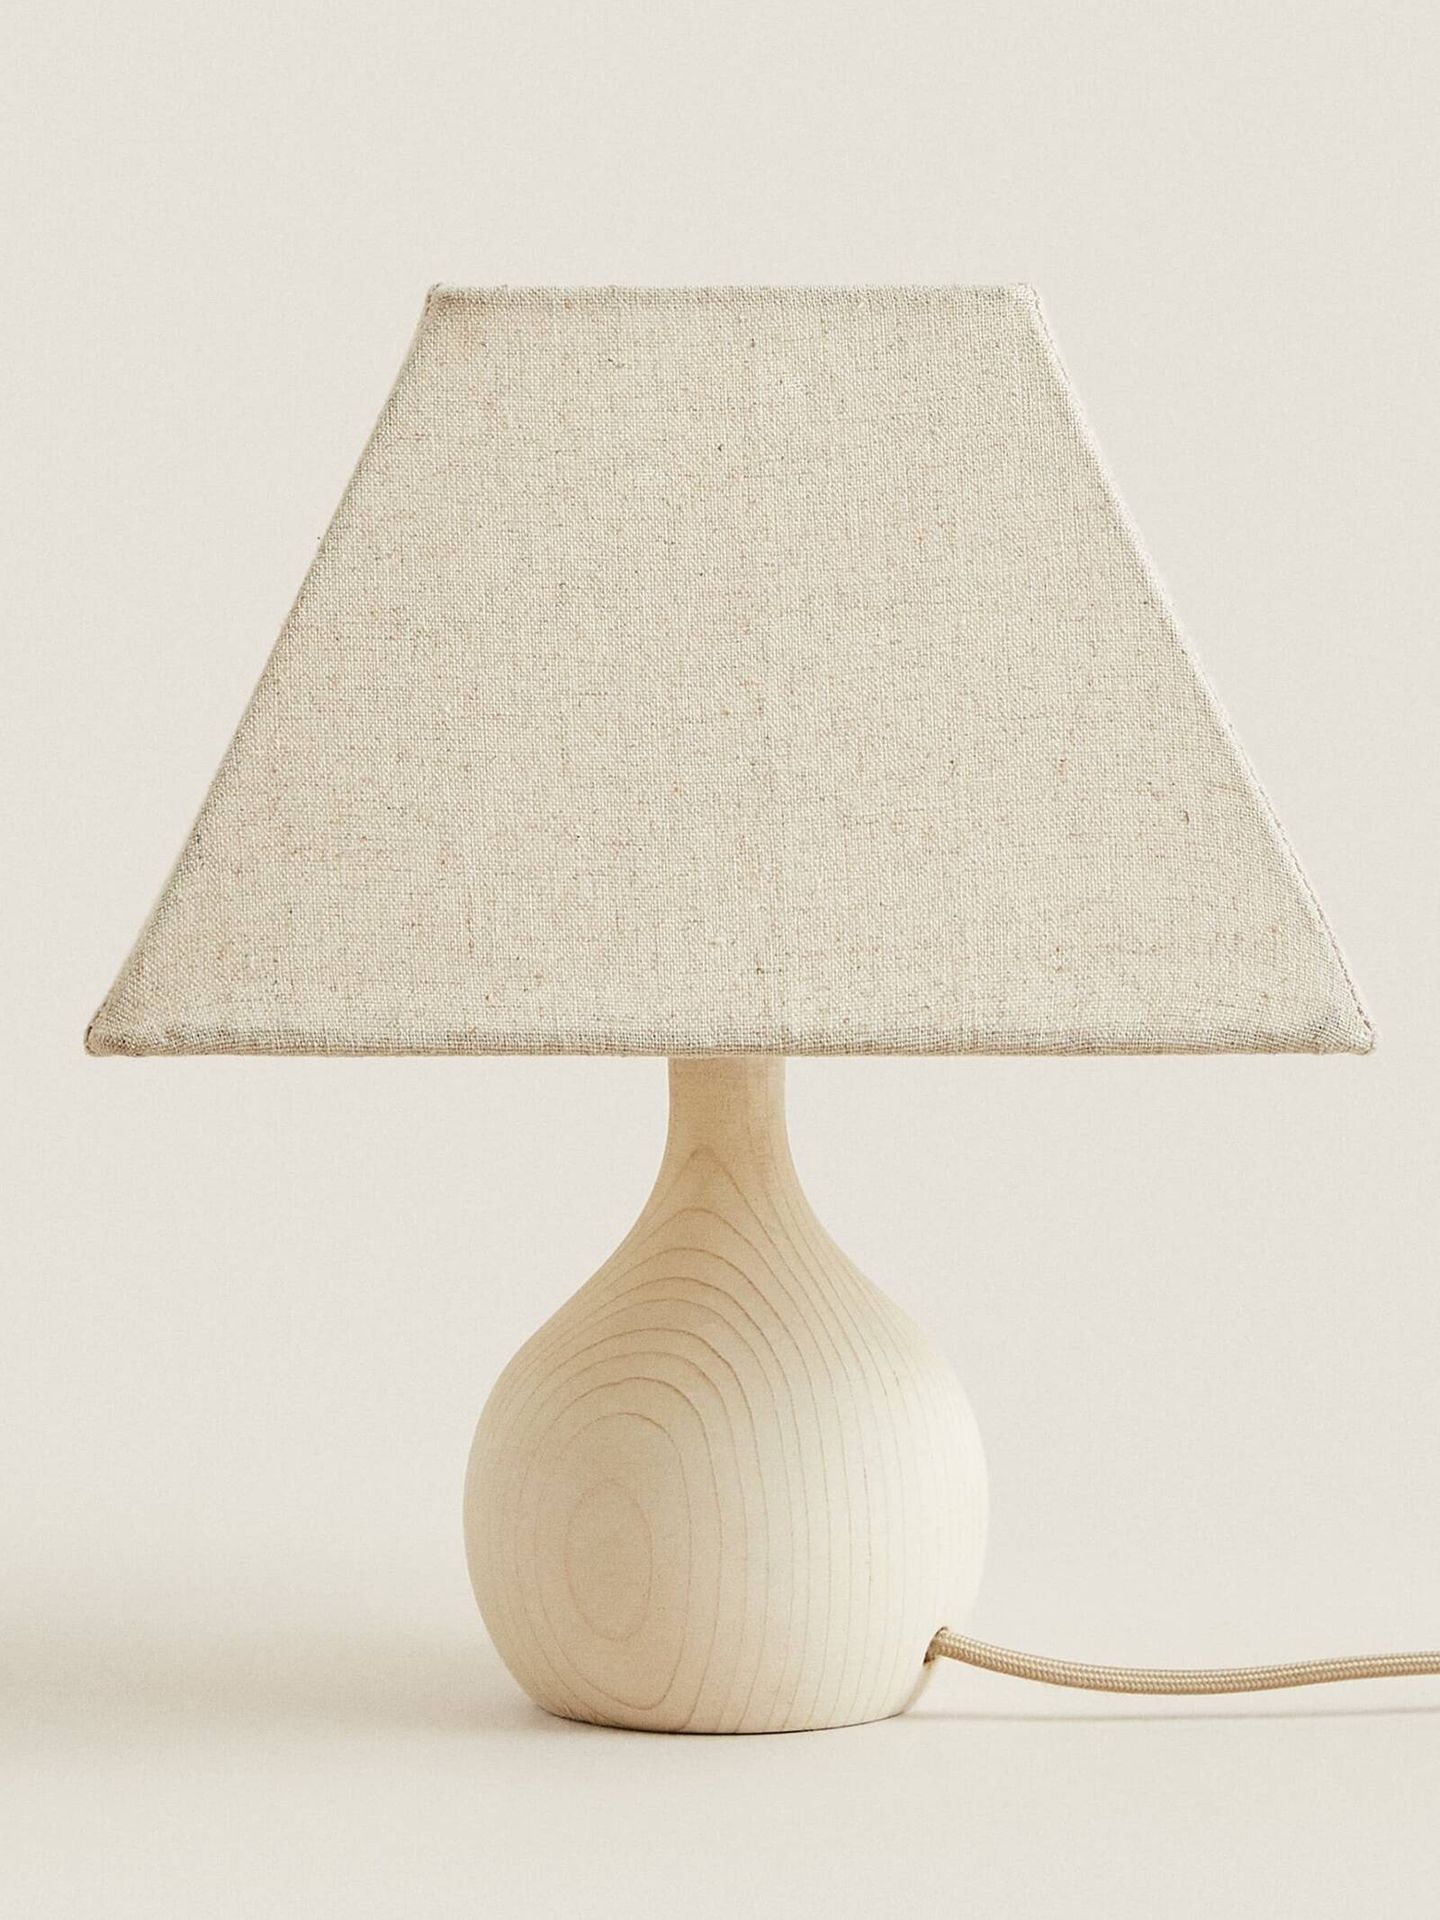 Una lámpara en tonos neutros, ideal en decoración. (Cortesía/Zara Home)